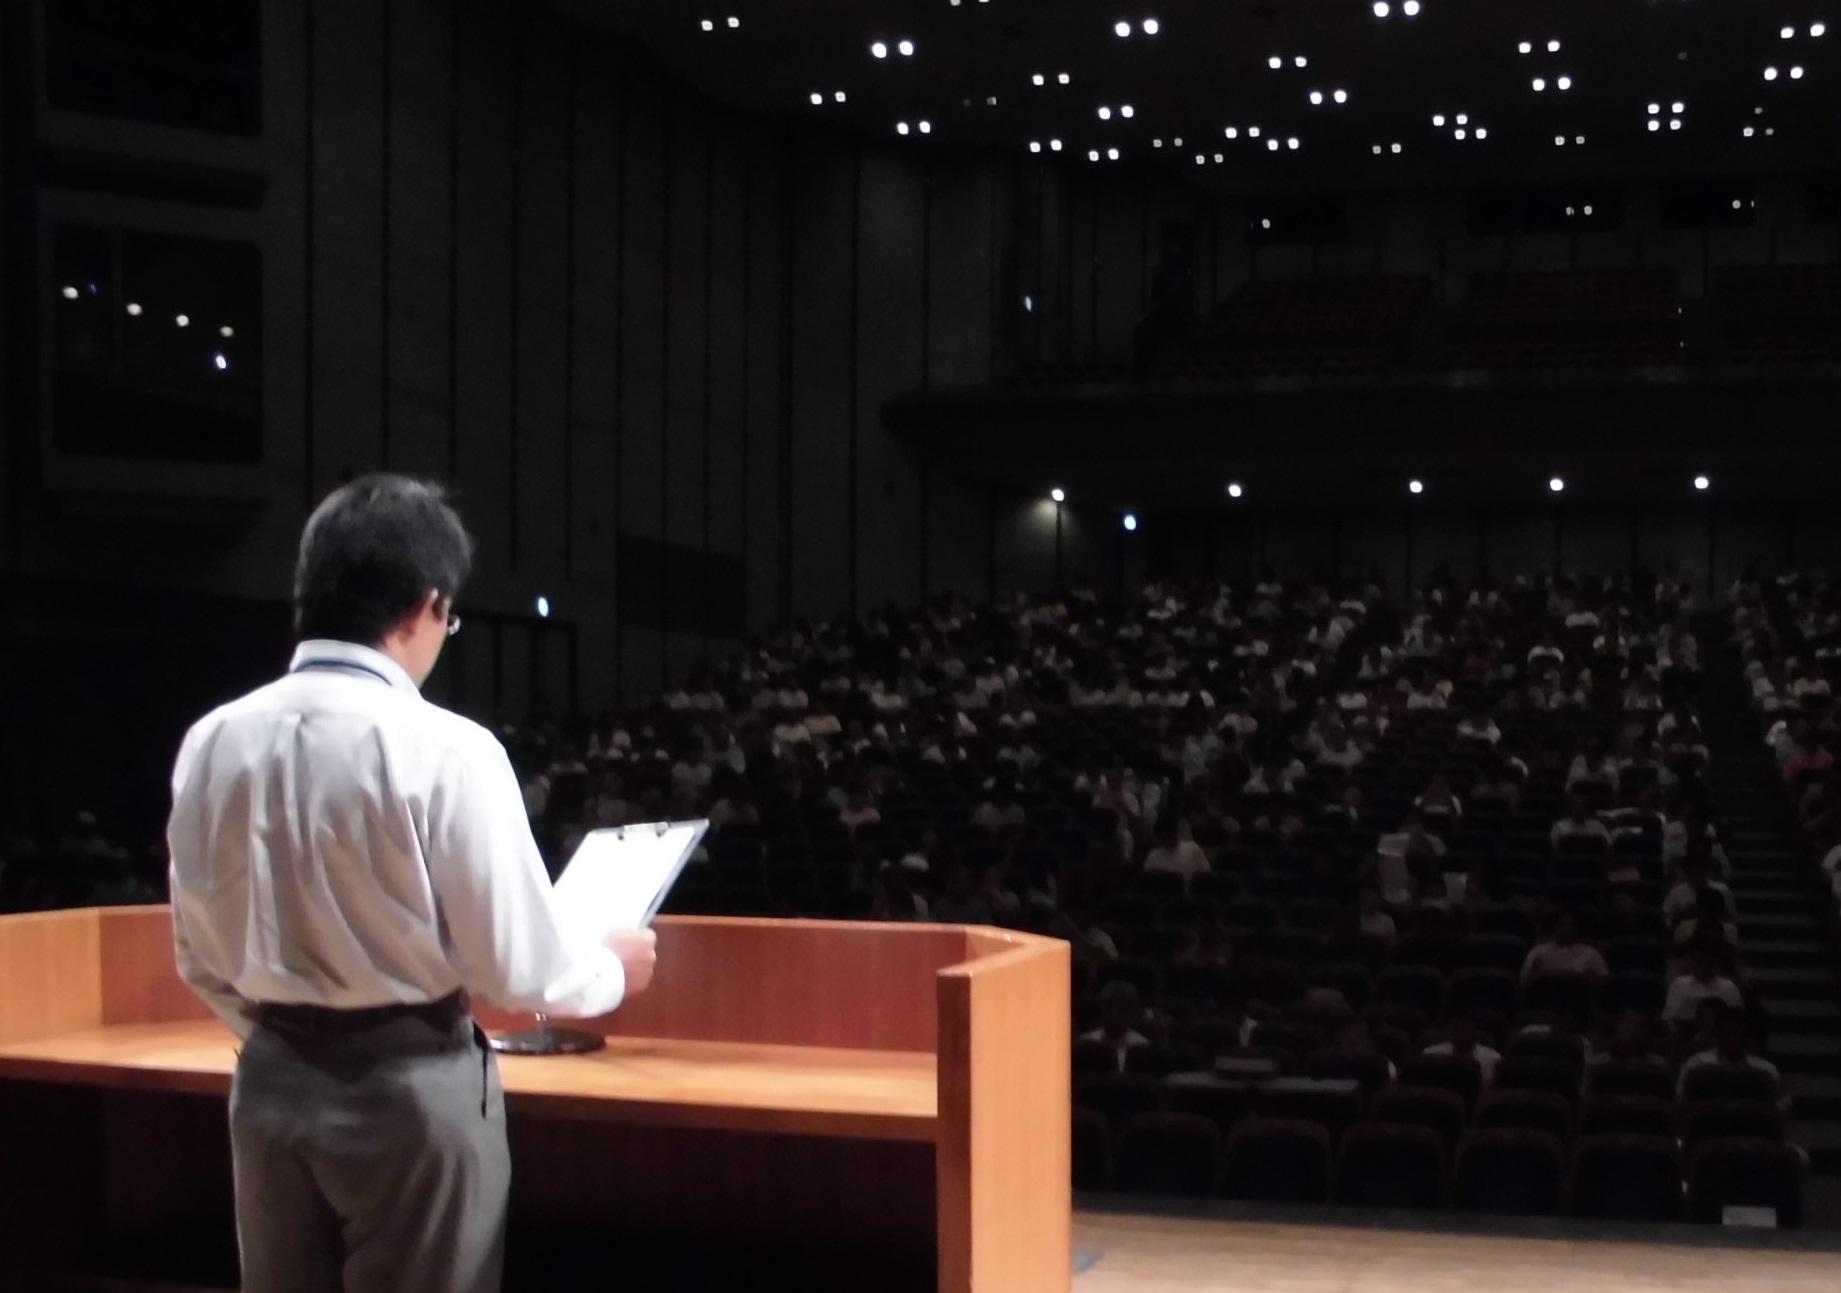 受講者たちの前で男性の講師がステージ上に立って講習を行っている様子を撮影した写真